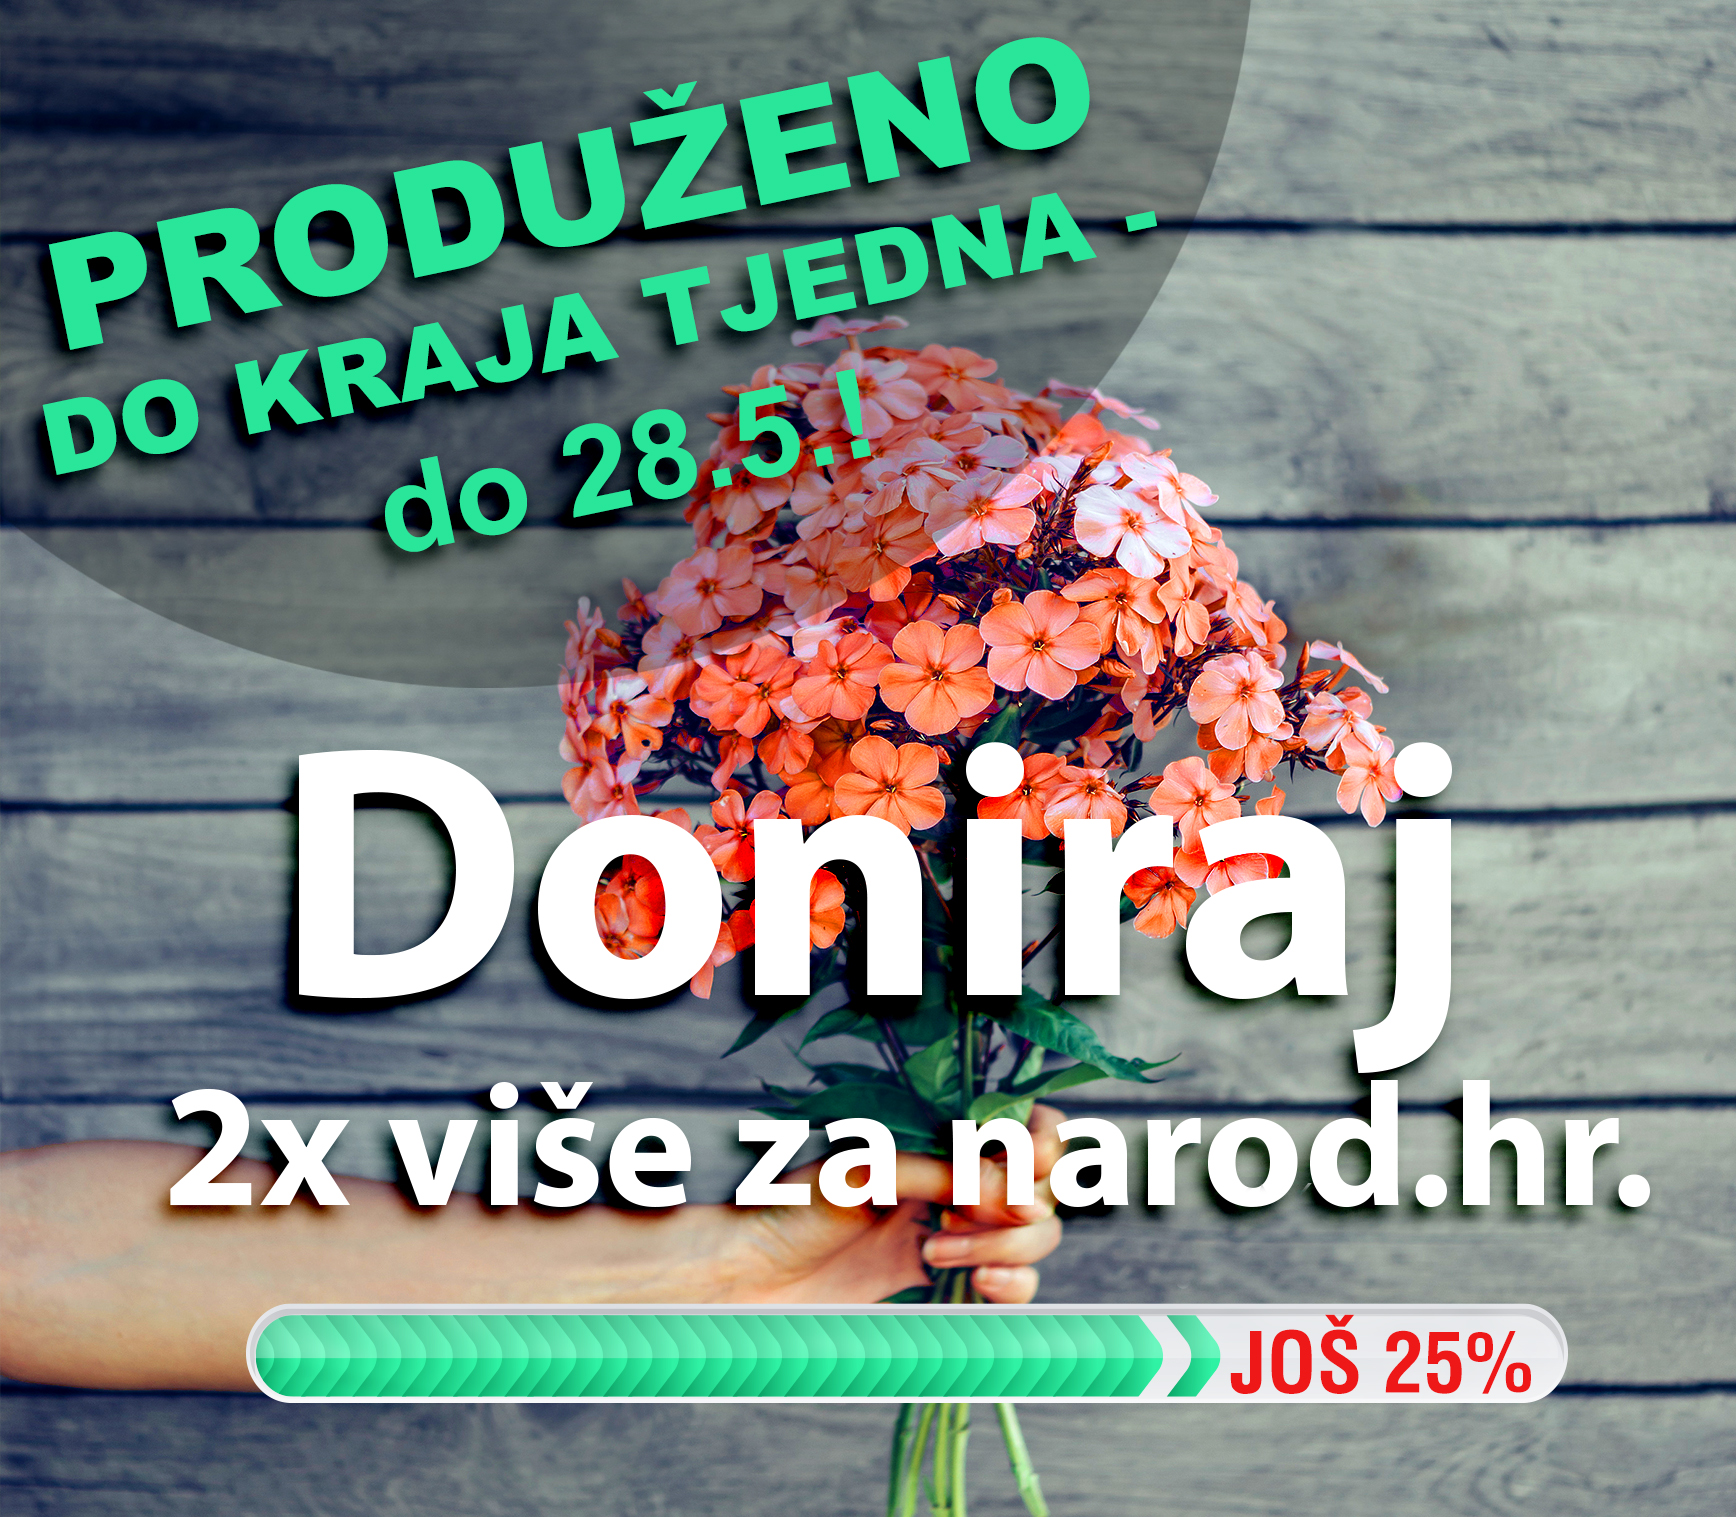 2x više za Narod.hr: Hvala za 75% ciljane svote, nedostaje još 25%!